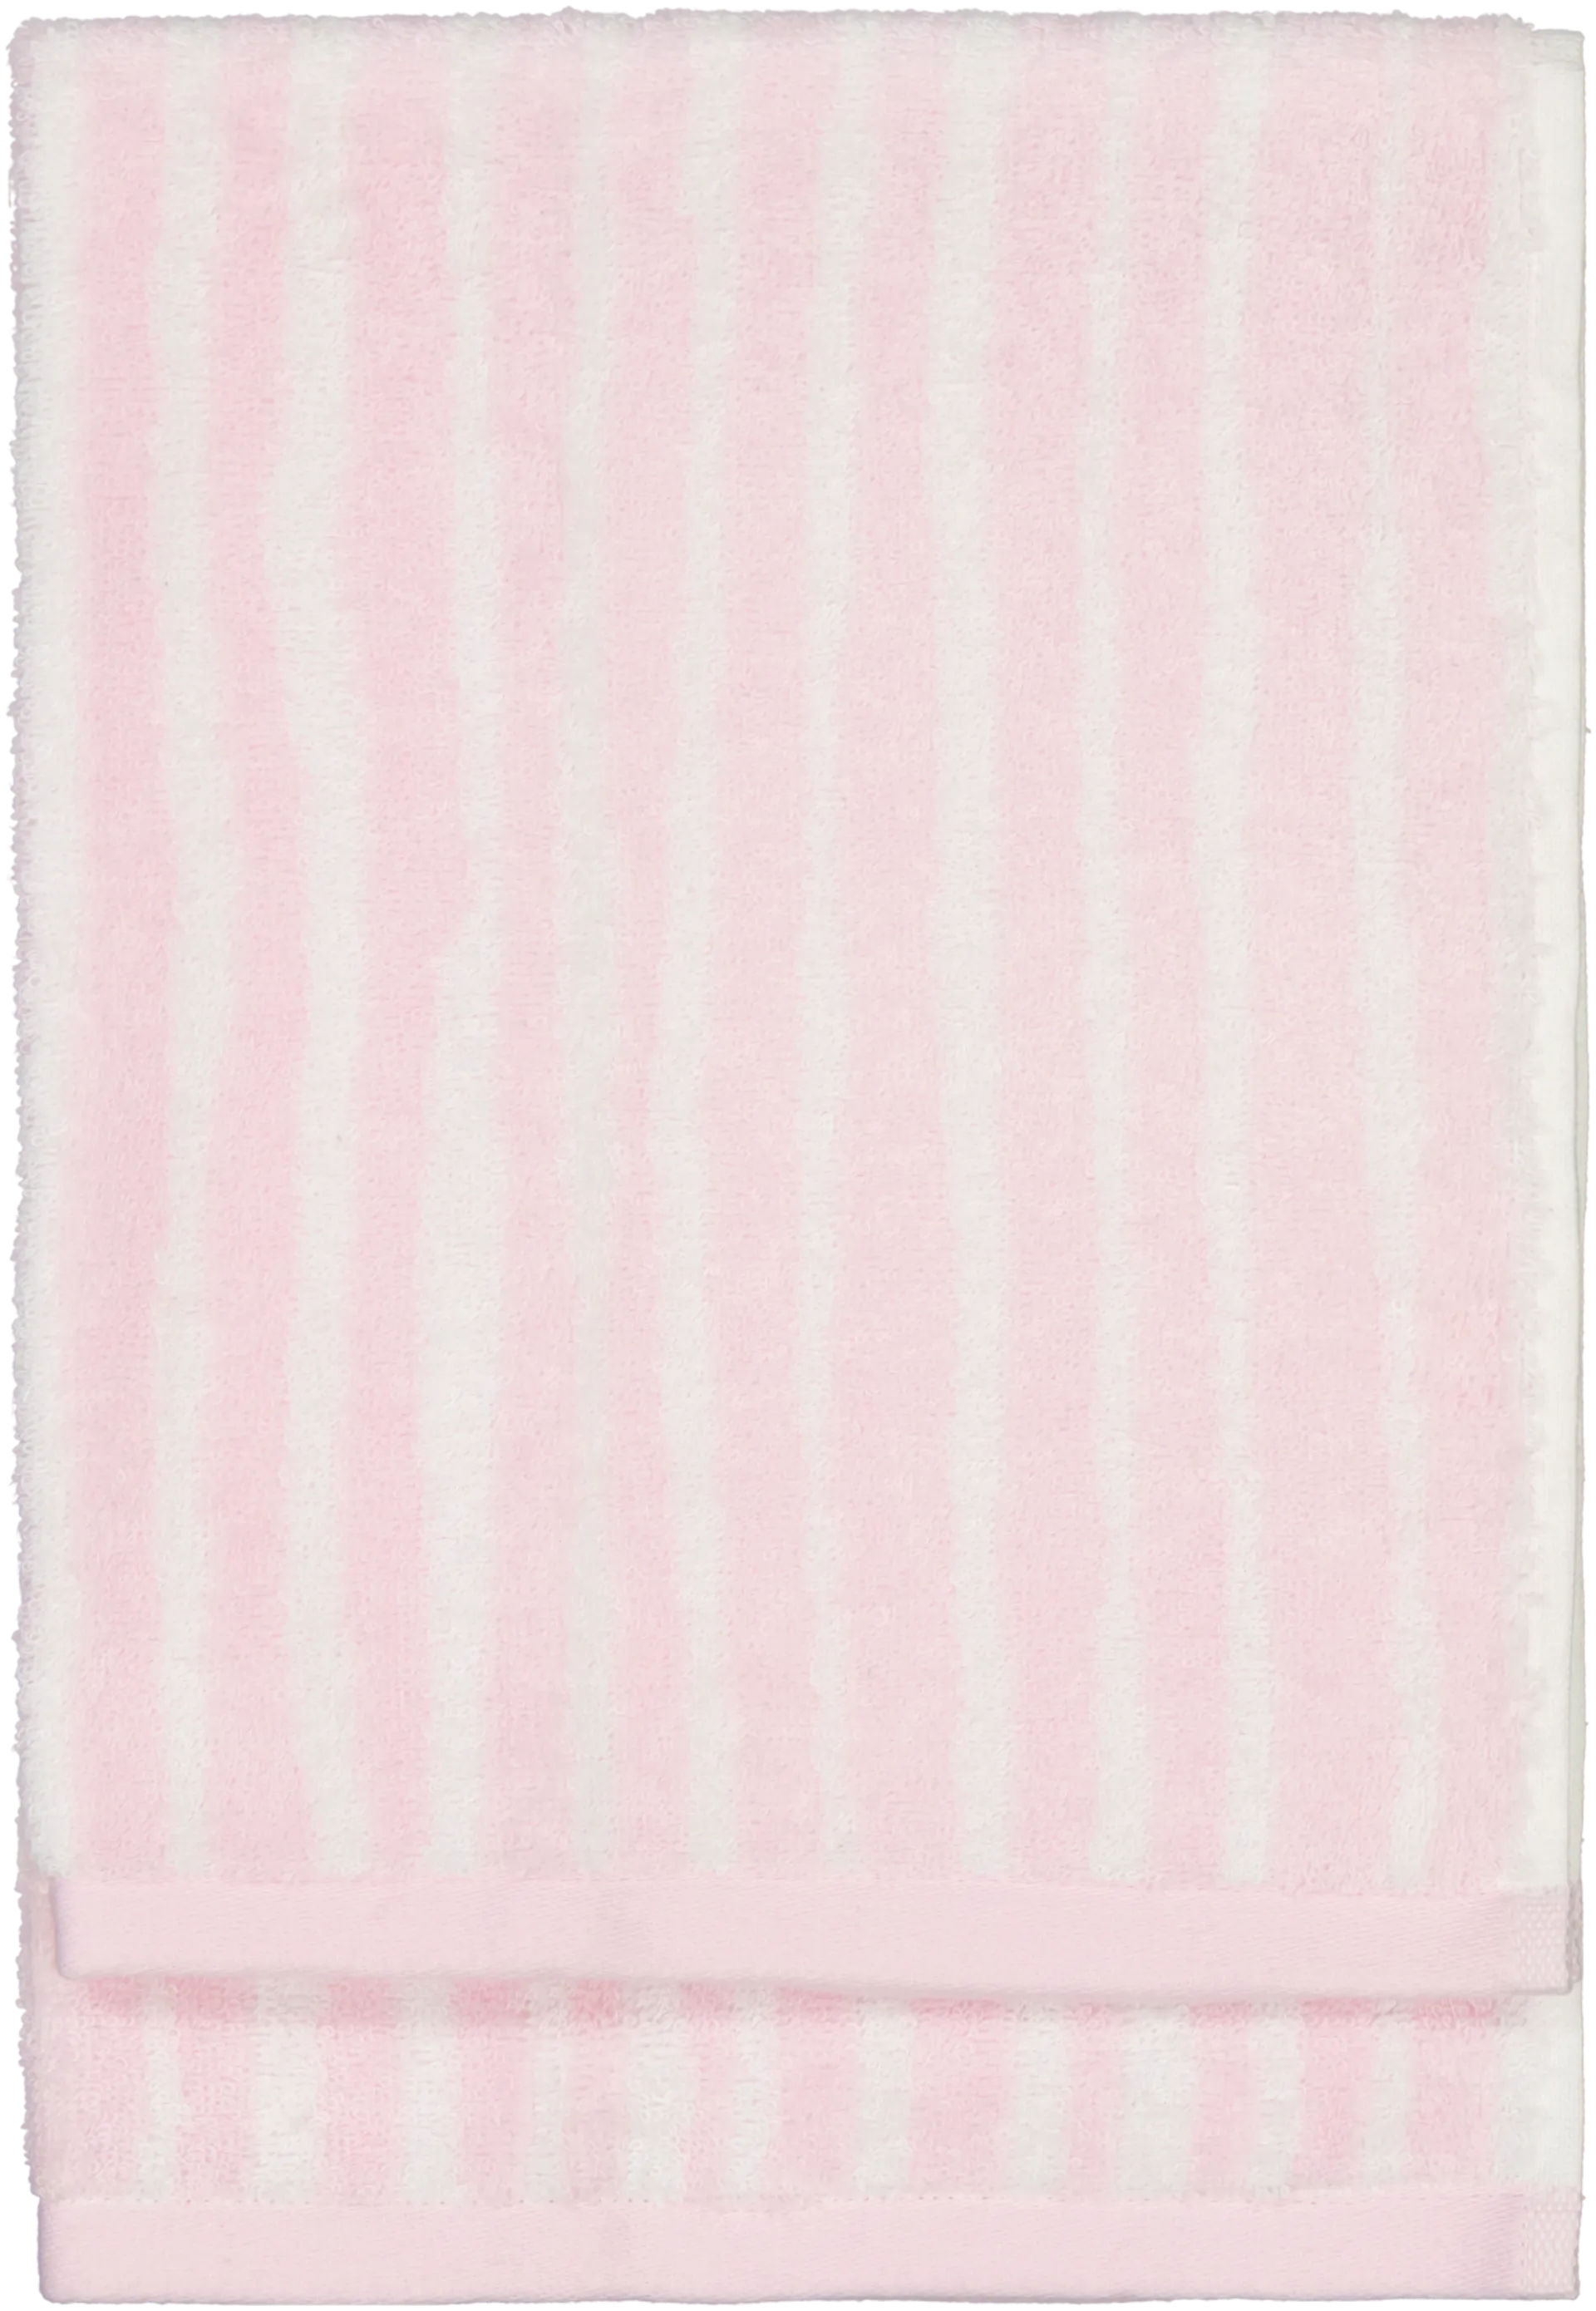 Finlayson käsipyyhe Tiuhta 50x70 cm, pinkki